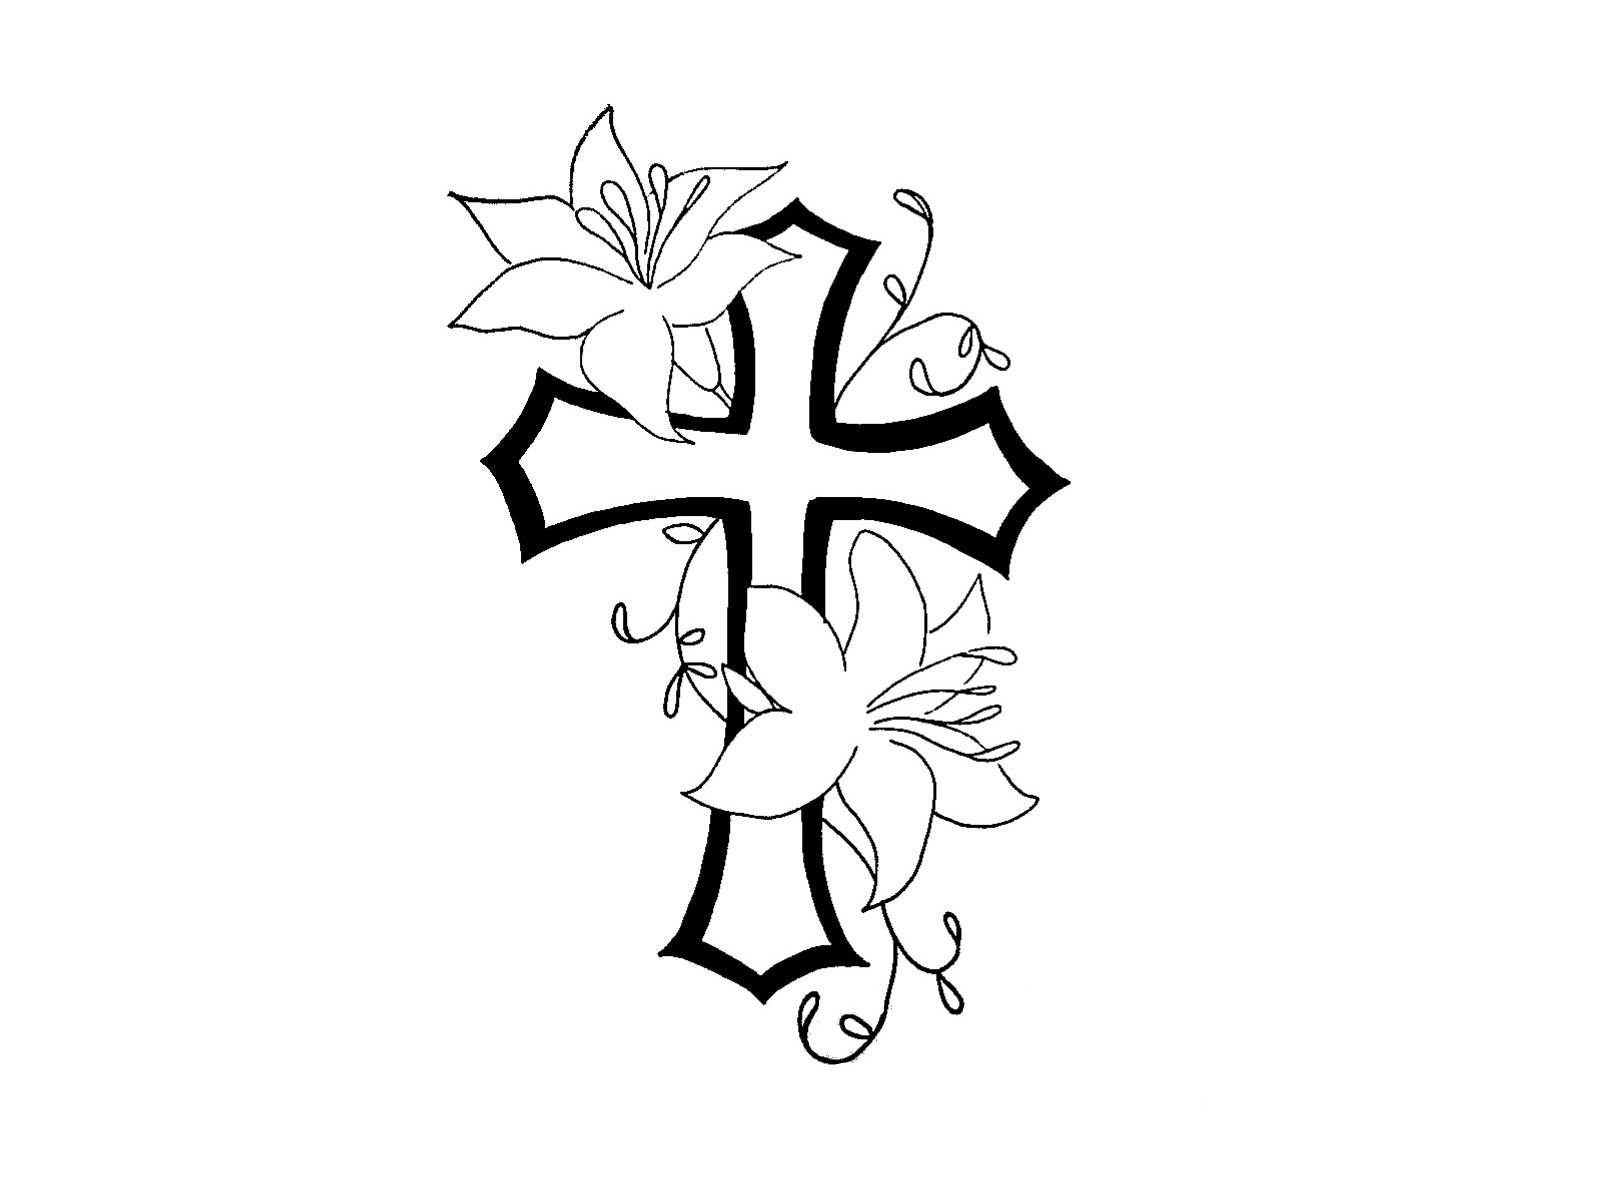 Крест по английски. Восьмиконечный православный крест тату. Крест эскиз. Тату рисунки. Татуировка крест эскиз.